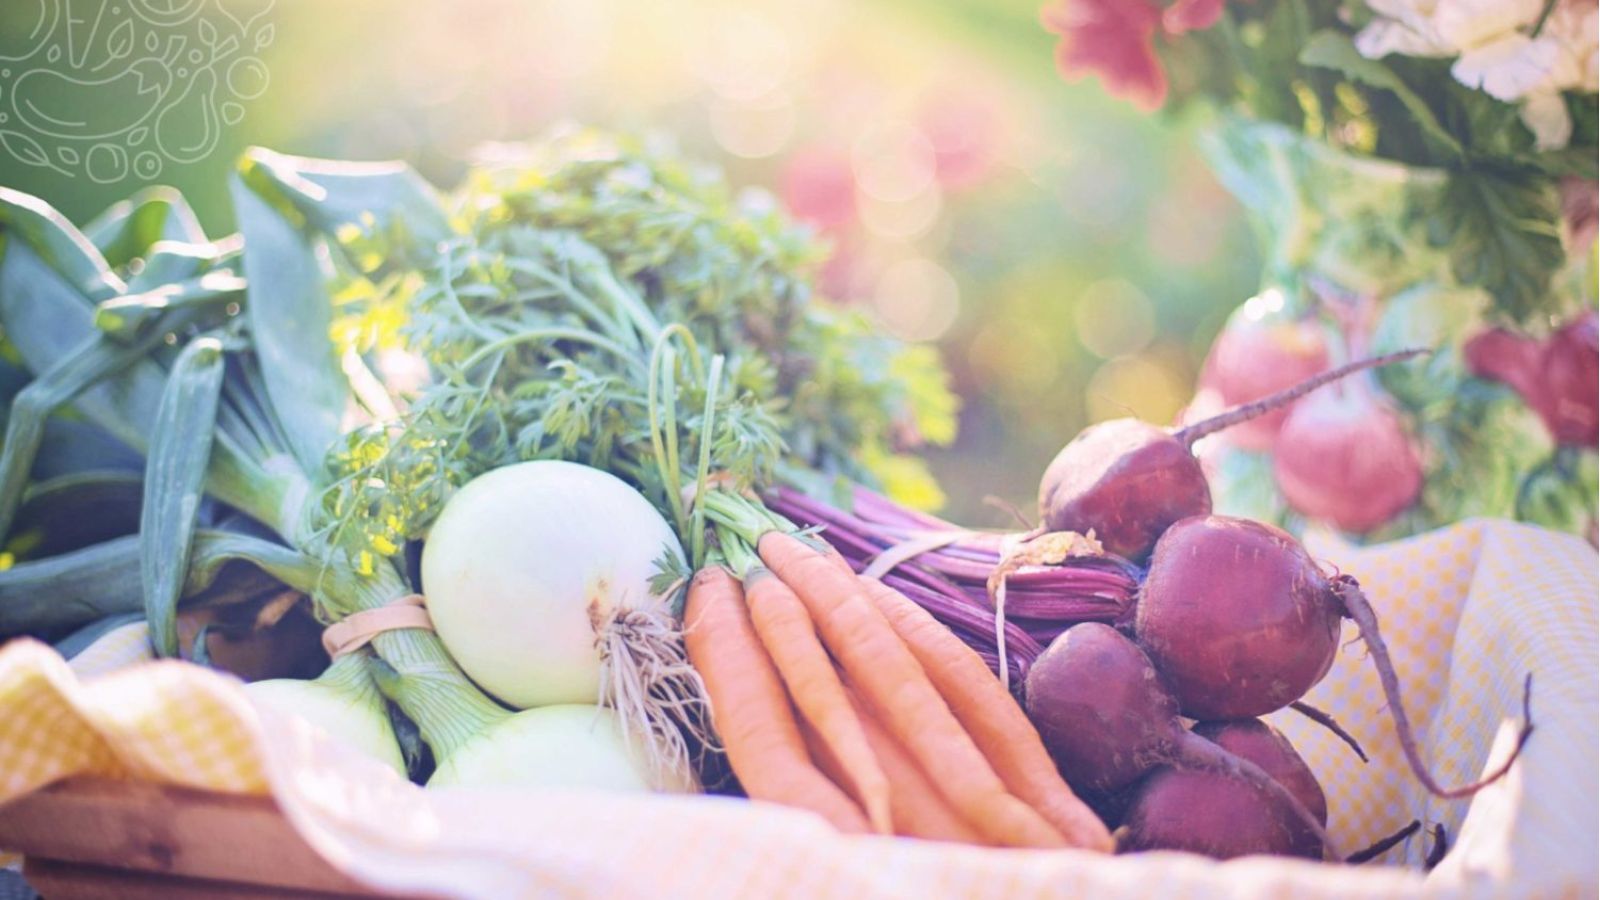 Eine gesunde Ernährung reich an Obst und Gemüse steigert die Fruchtbarkeit